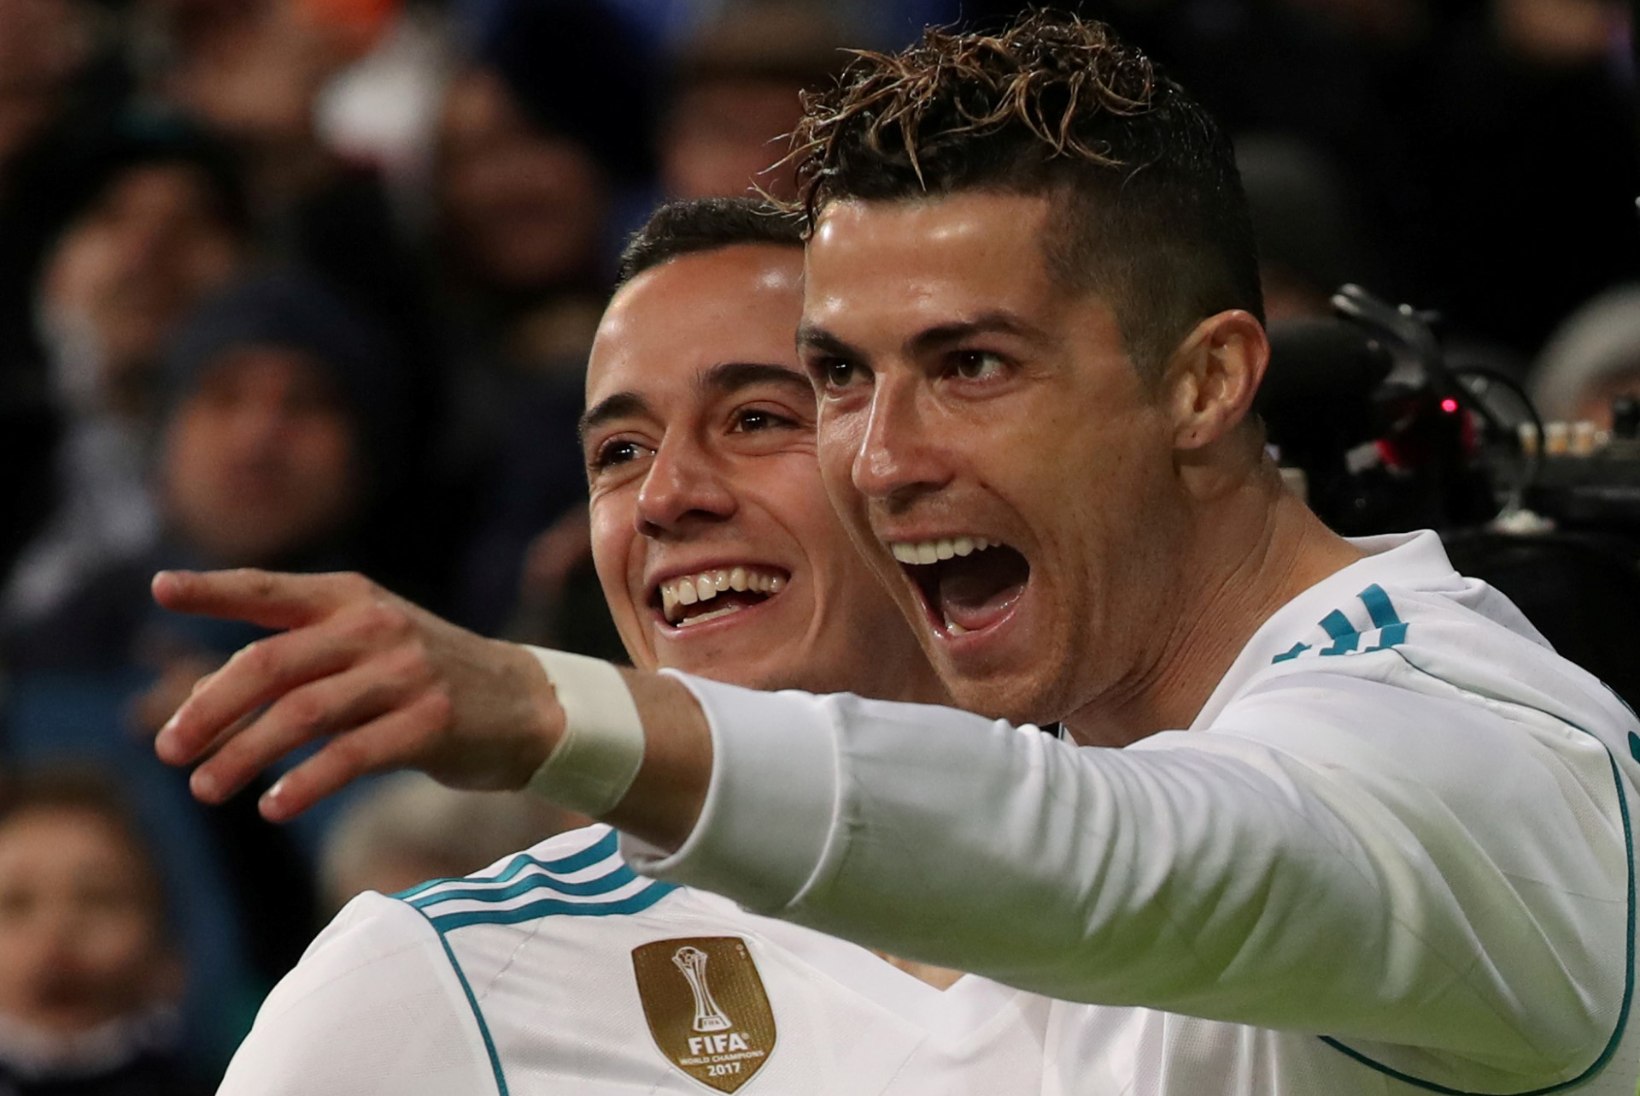 VIDEO | Uus noorus!? Ronaldo on viimase üheksa mänguga löönud 18 väravat